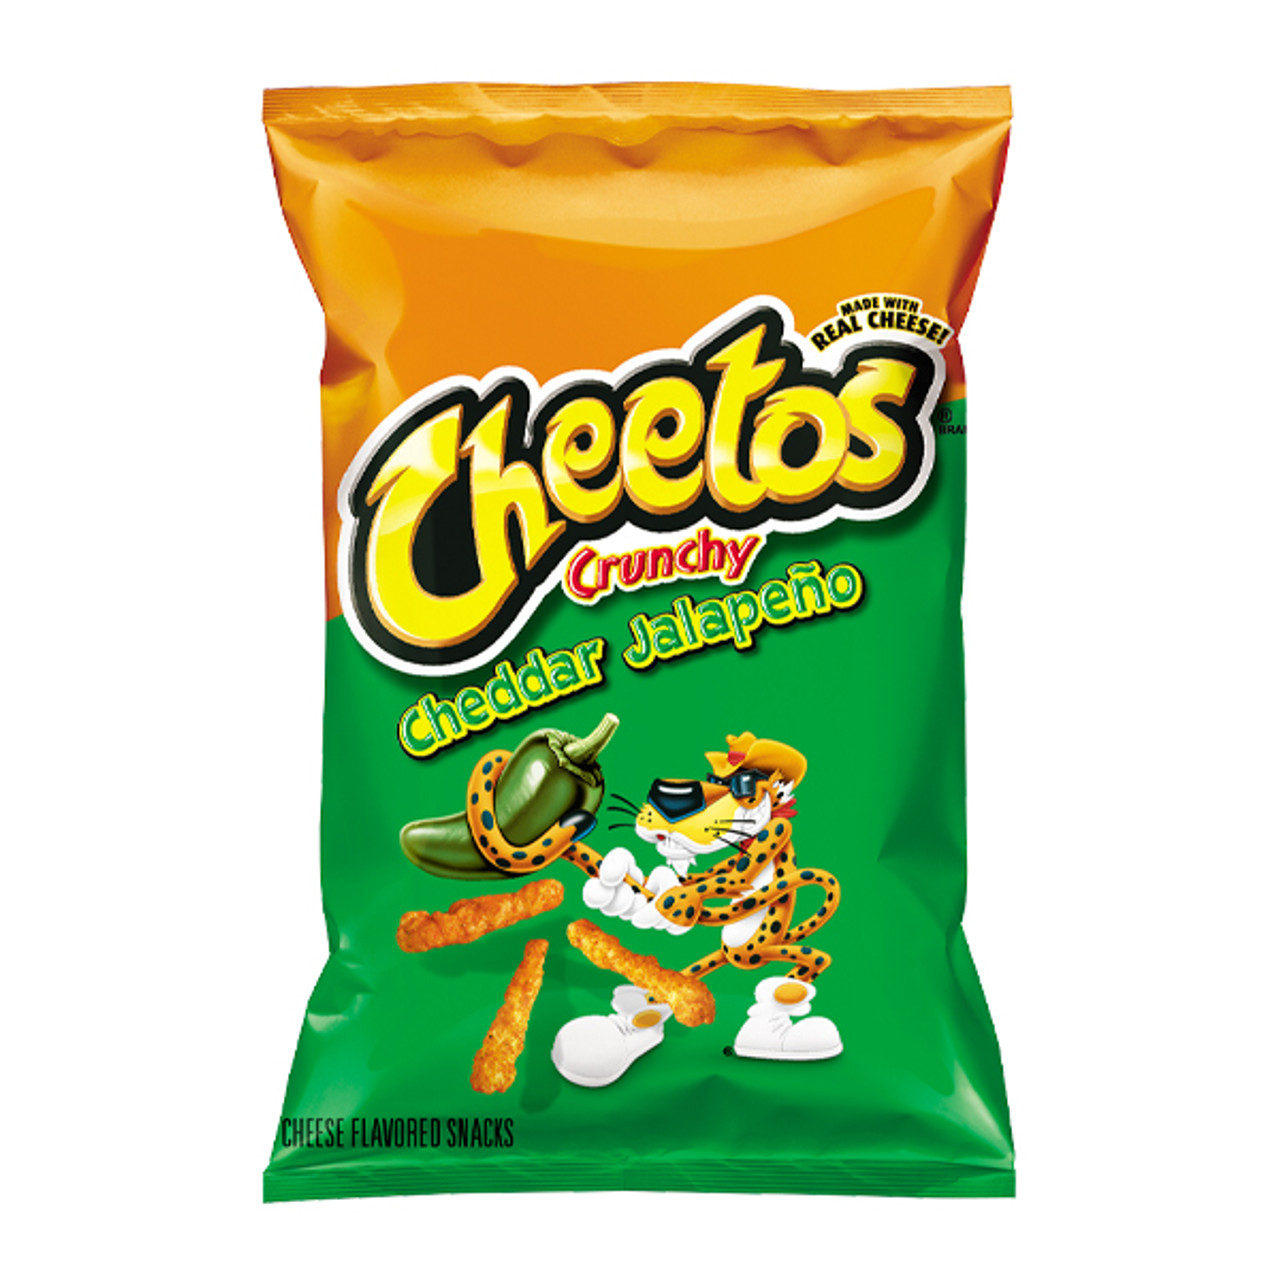 Cheetos - Crunchy Cheddar Jalapeňo 226,8g Křupky CHEETOS jsou velmi oblíbené sýrové pochoutky, které baví každého! 
Tato varianta je s příchutí pálivých papriček Jalapeňo a sýru Cheddar.

Složení: obohacená kukuřičná mouka  ...